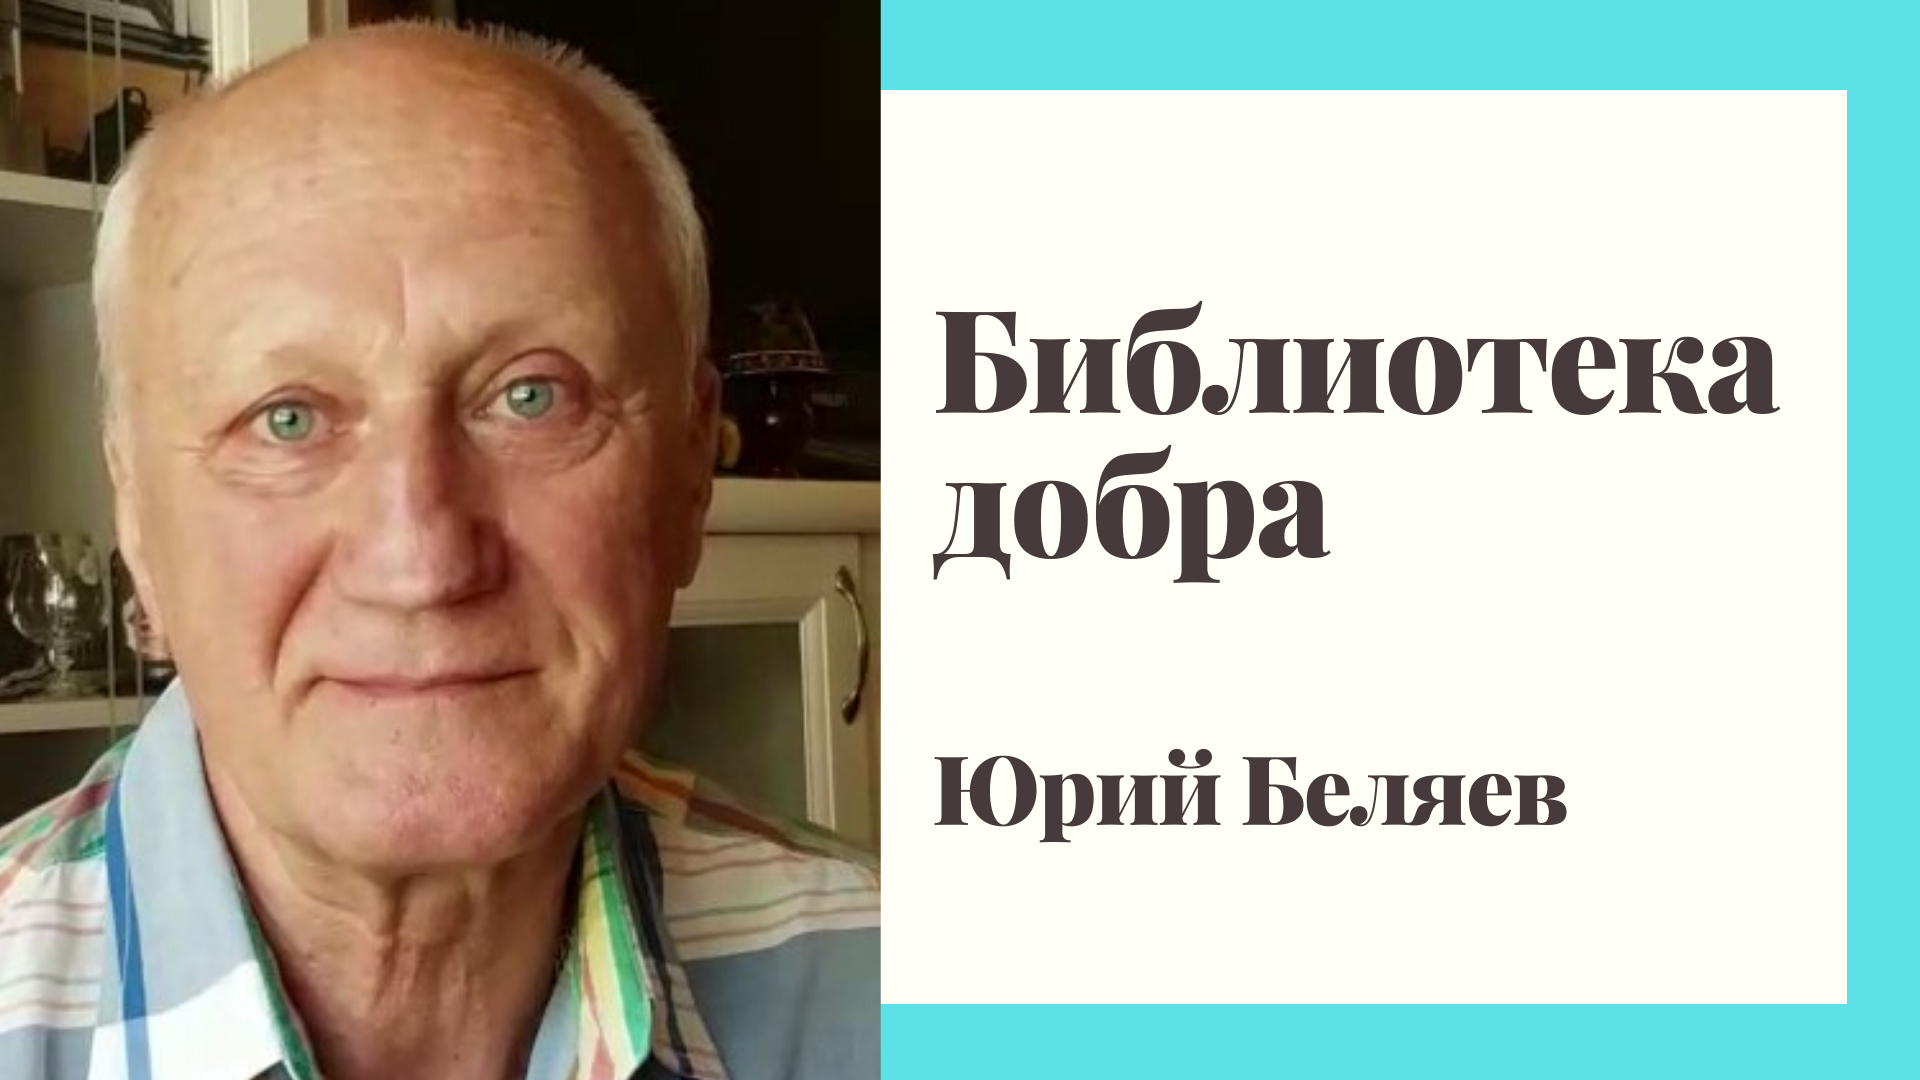 Актер Юрий Беляев о том, как книга старца Иоанна Крестьянкина поменяла его жизнь